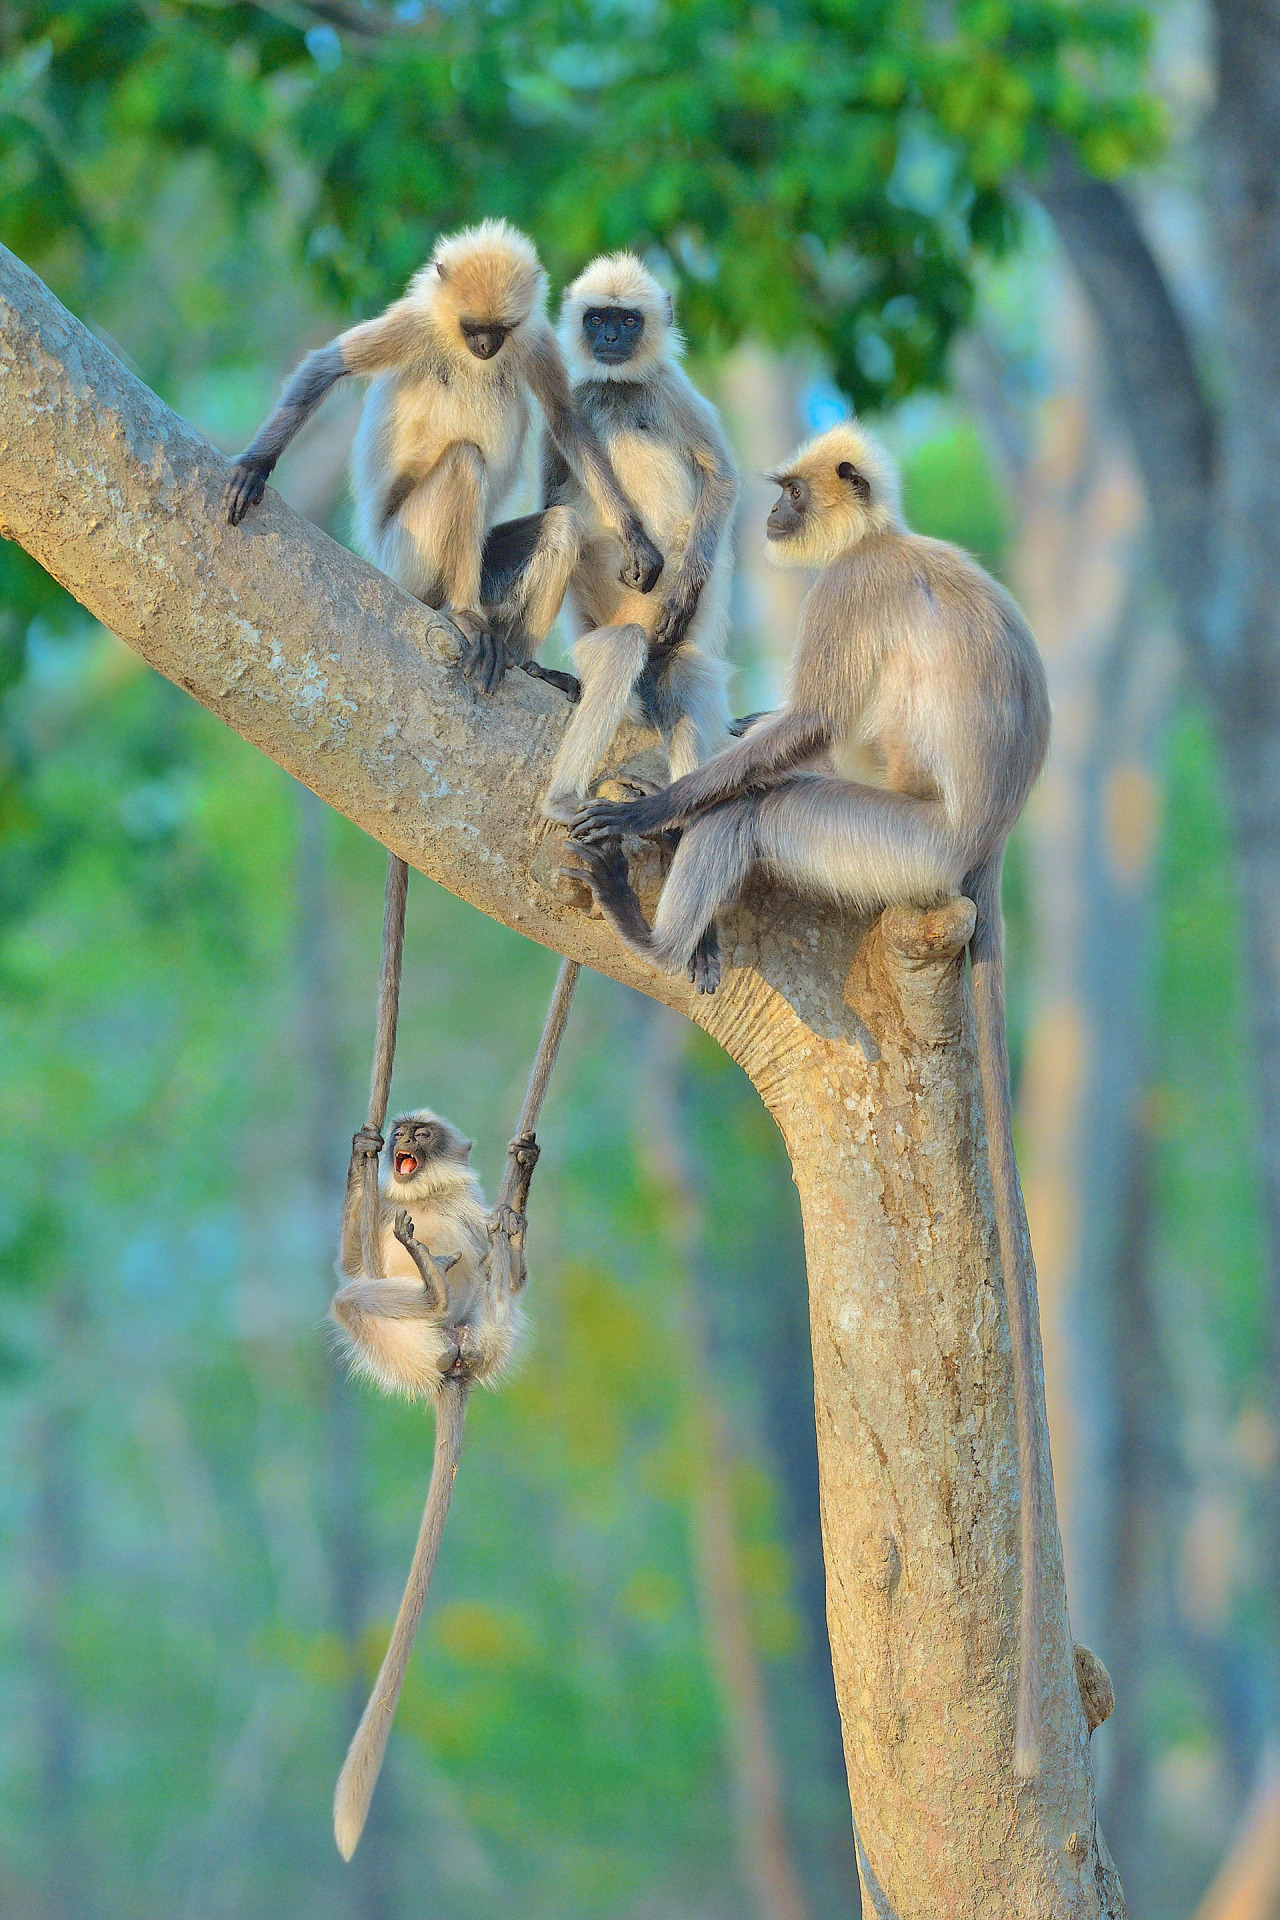 회색 langurs 나무에 스윙을 만든 사진 : Karnataka, 인도